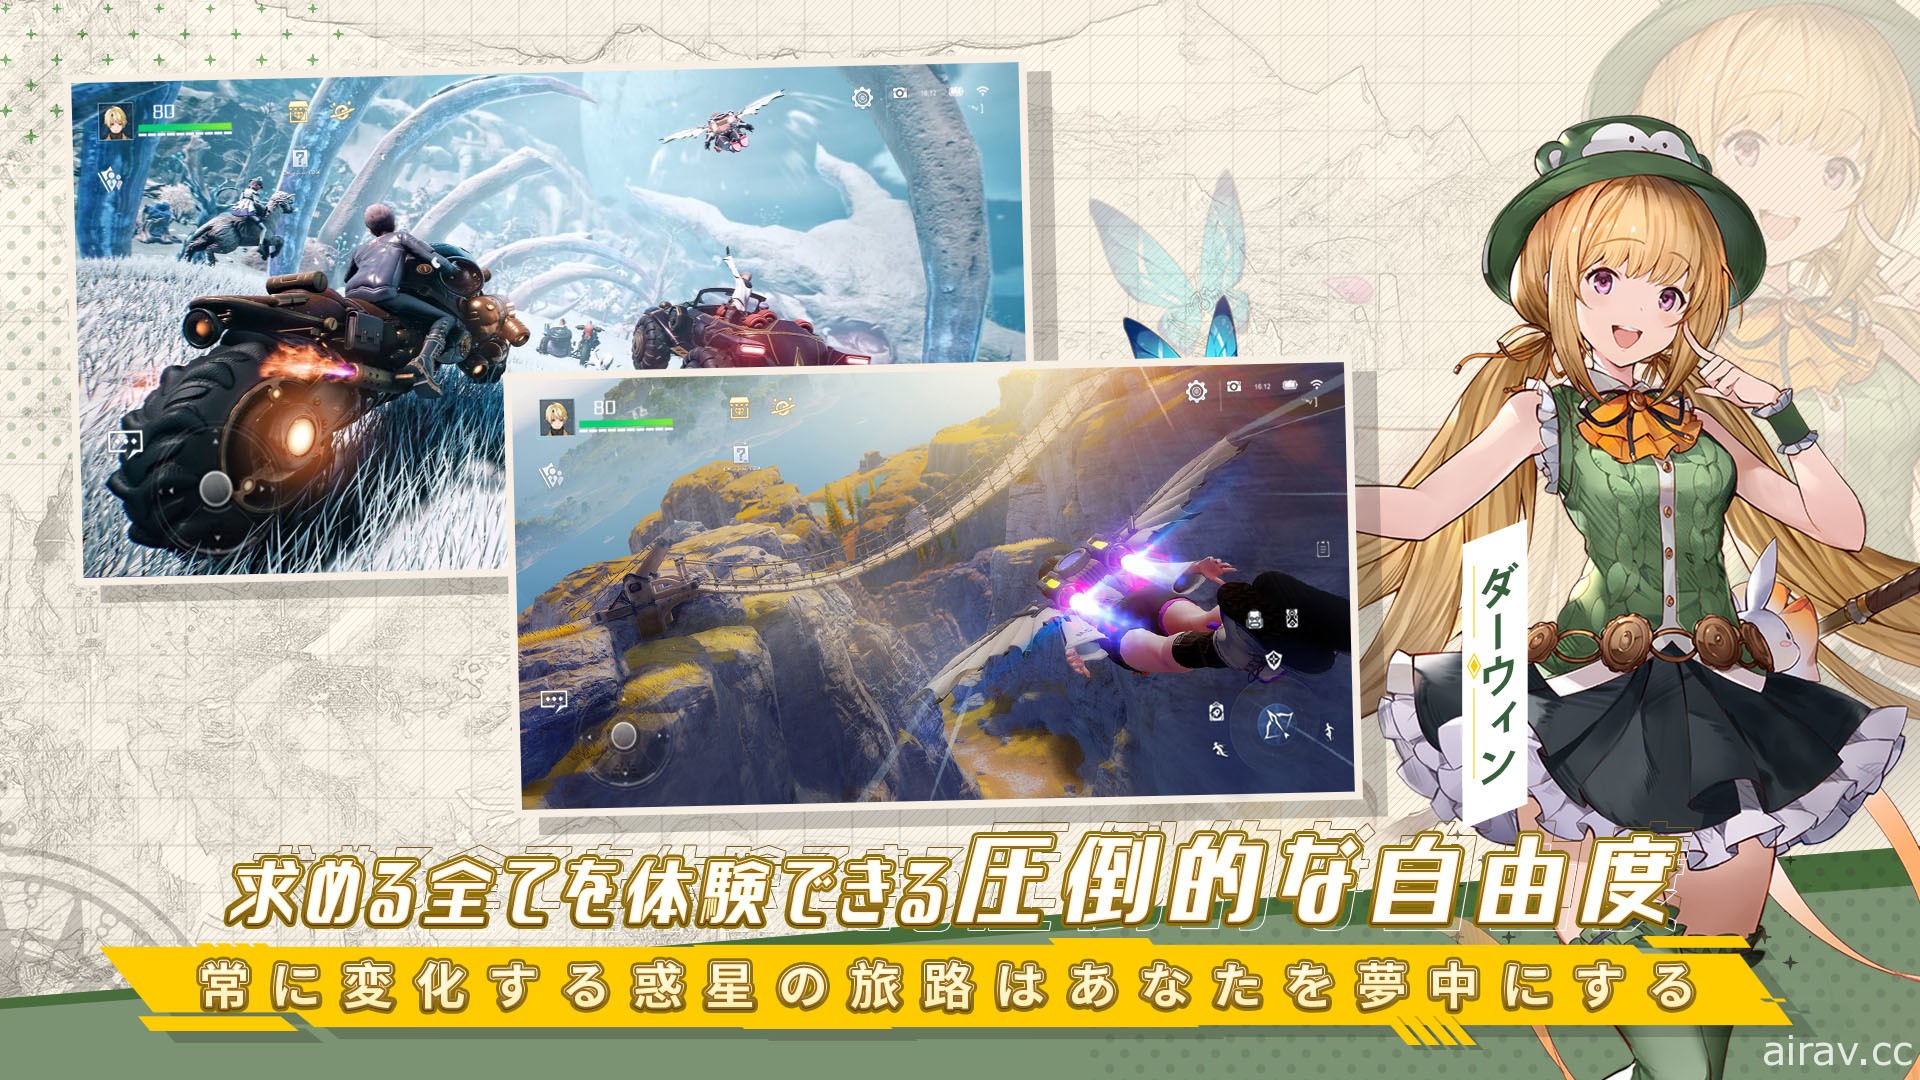 星球探索型开放世界 RPG《诺亚之心》于日本展开预先注册